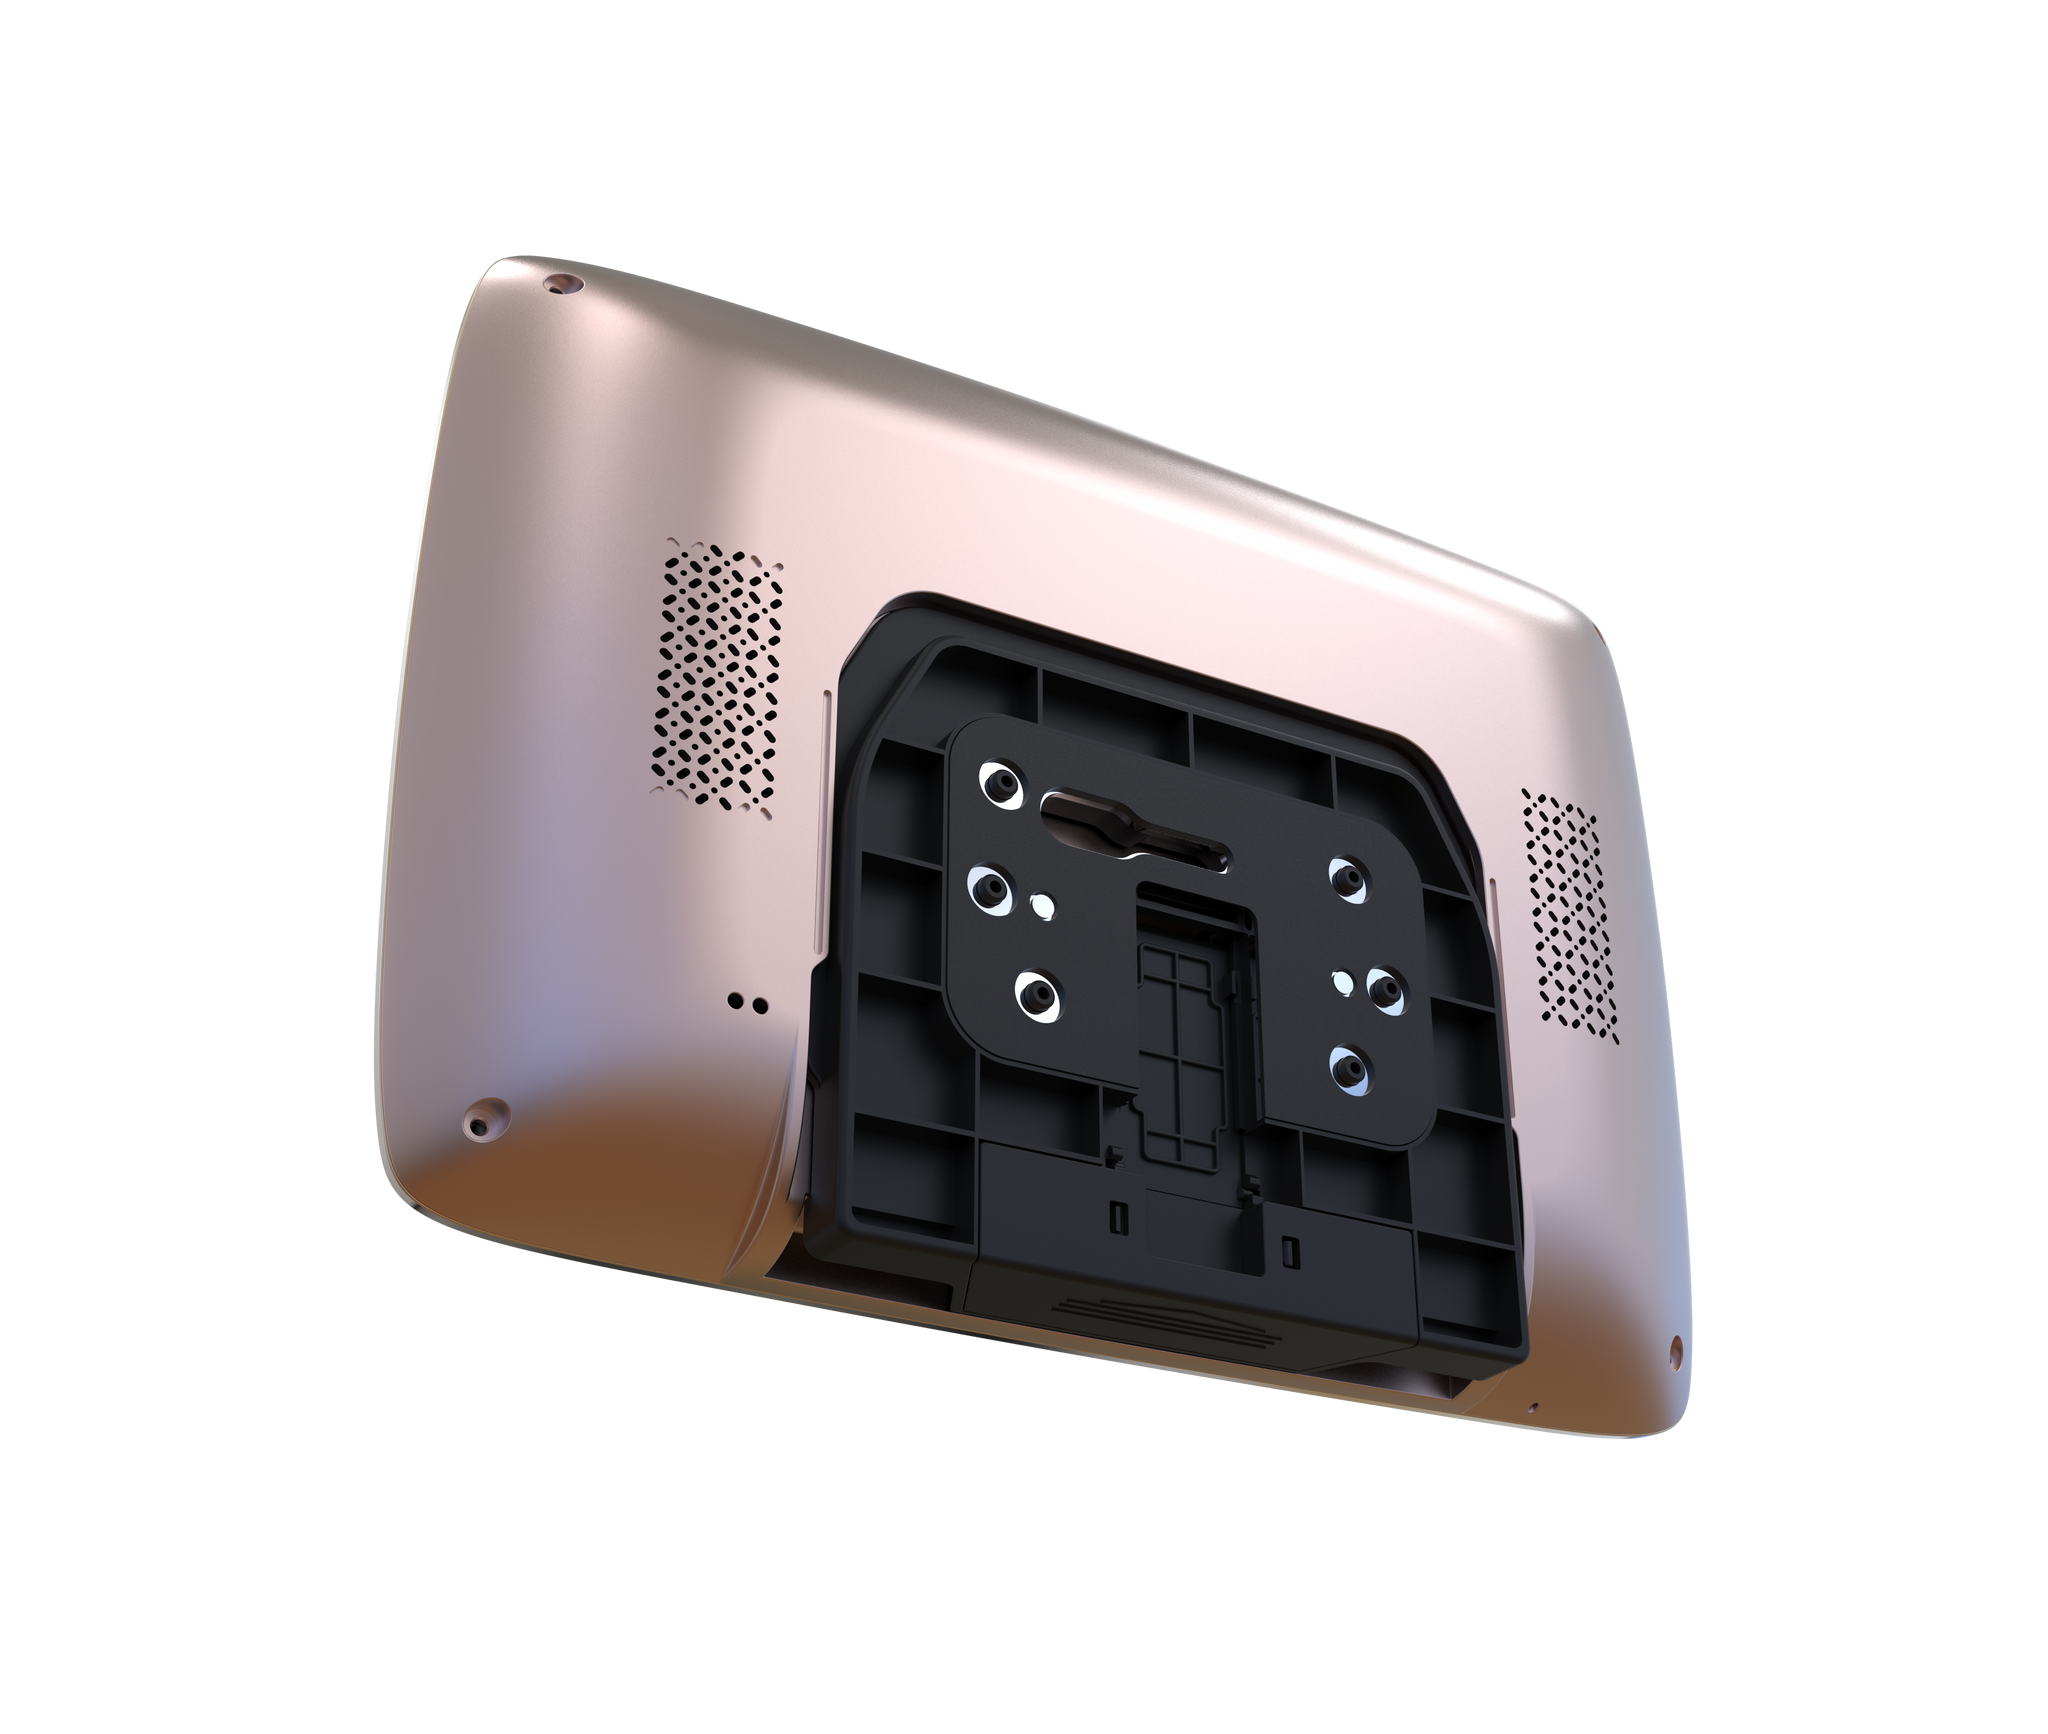 Spioncino Digitale Eques VEIU MAX con Doppia Telecamera, Display 7 Pollici e Funzioni di Sorveglianza, Human Detection e Motion Detection - Batteria da 40 Giorni